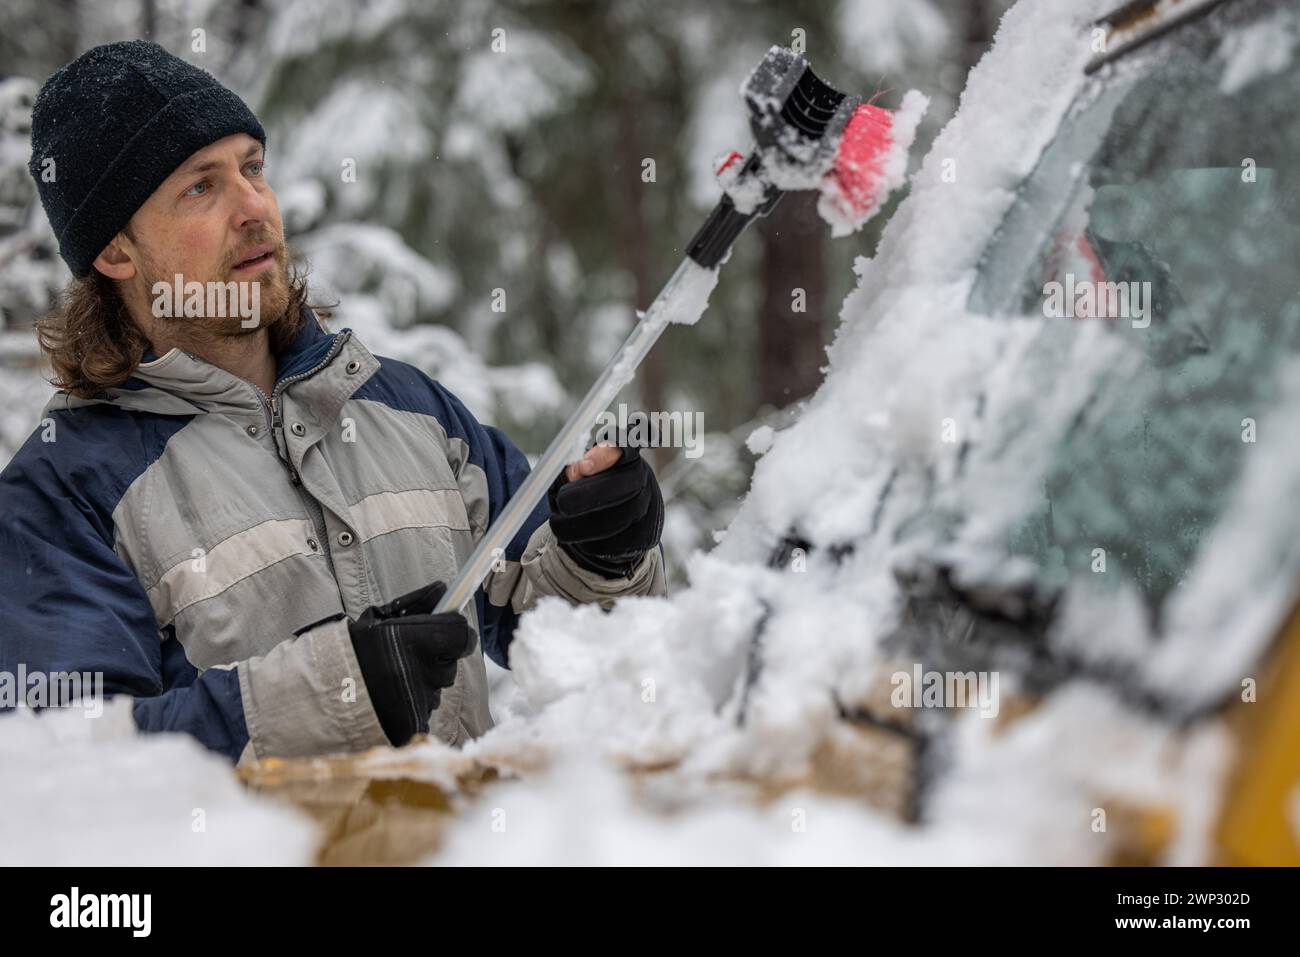 Ein Mann mit schwarzem Hut benutzt eine Schneebürste, um den Schnee von einem Auto zu entfernen Stockfoto